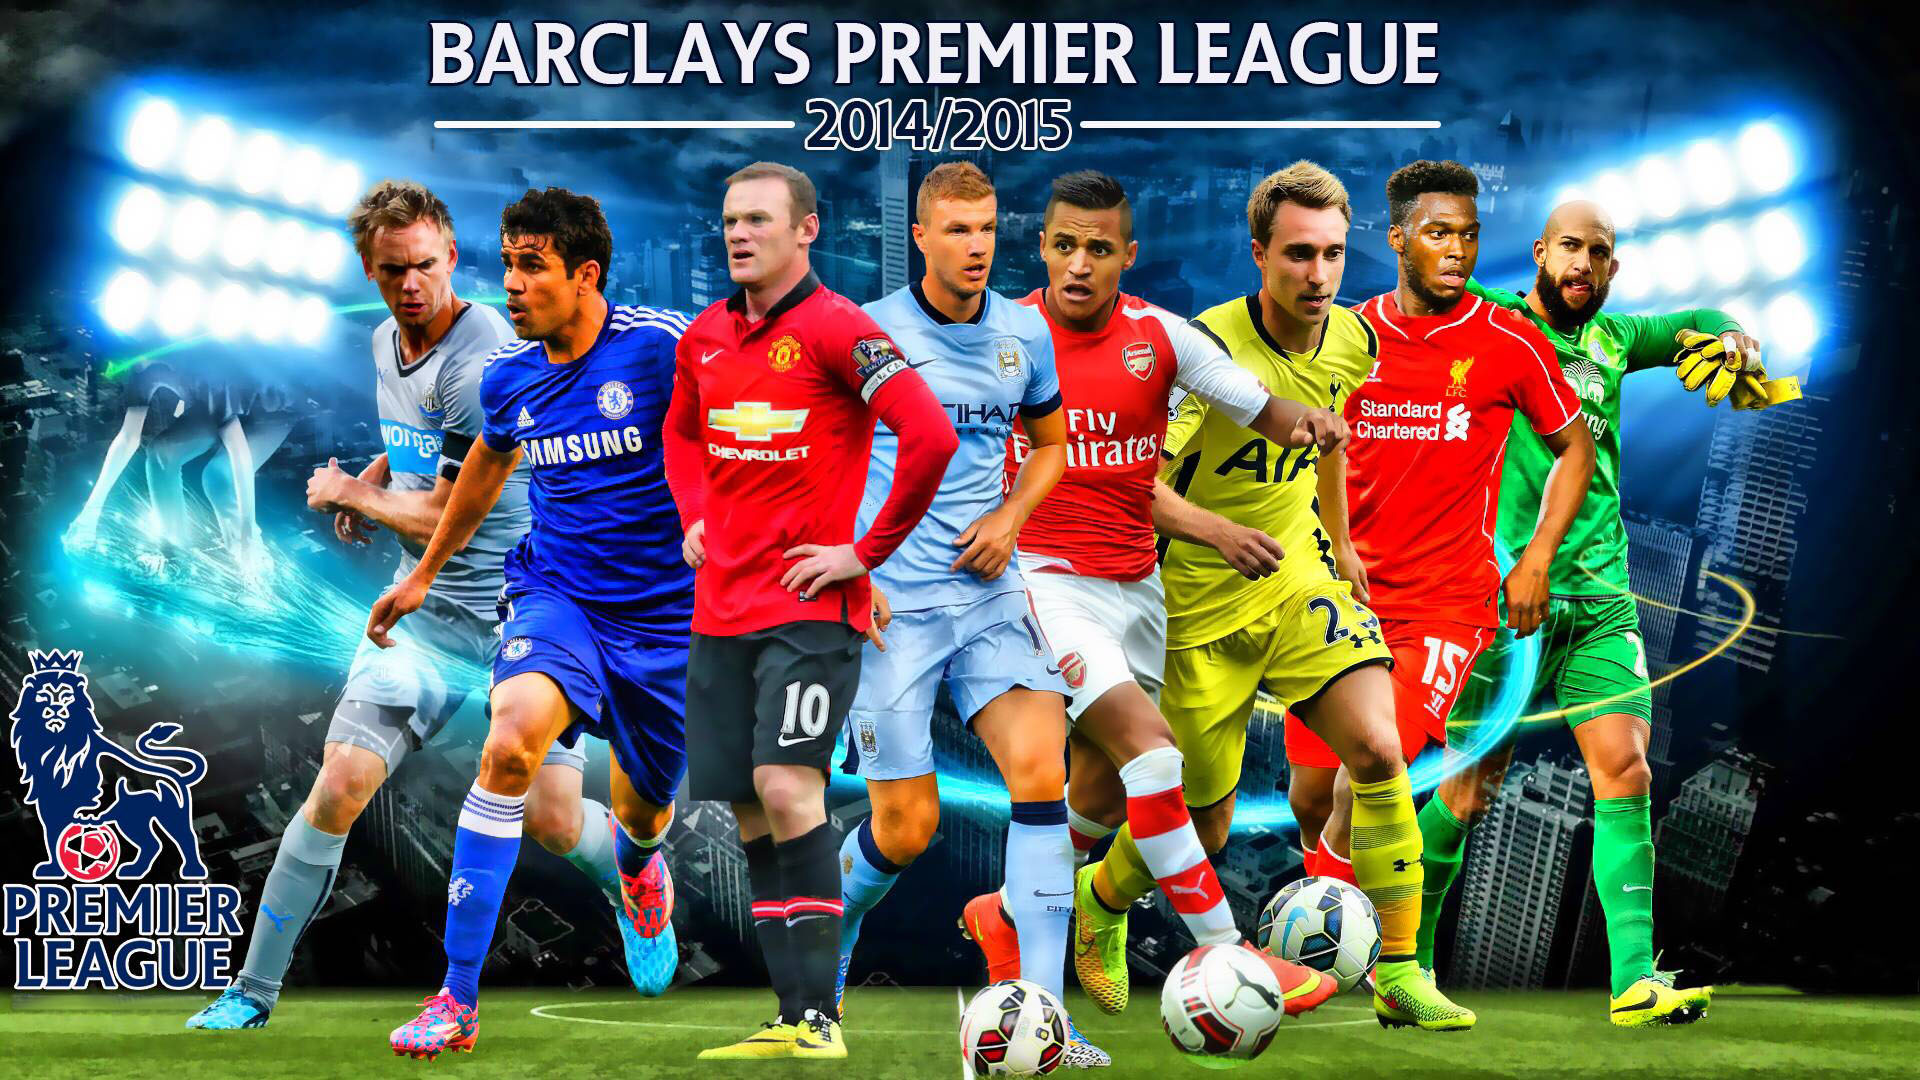 The Barclays Premier League Wallpaper 2014 2015